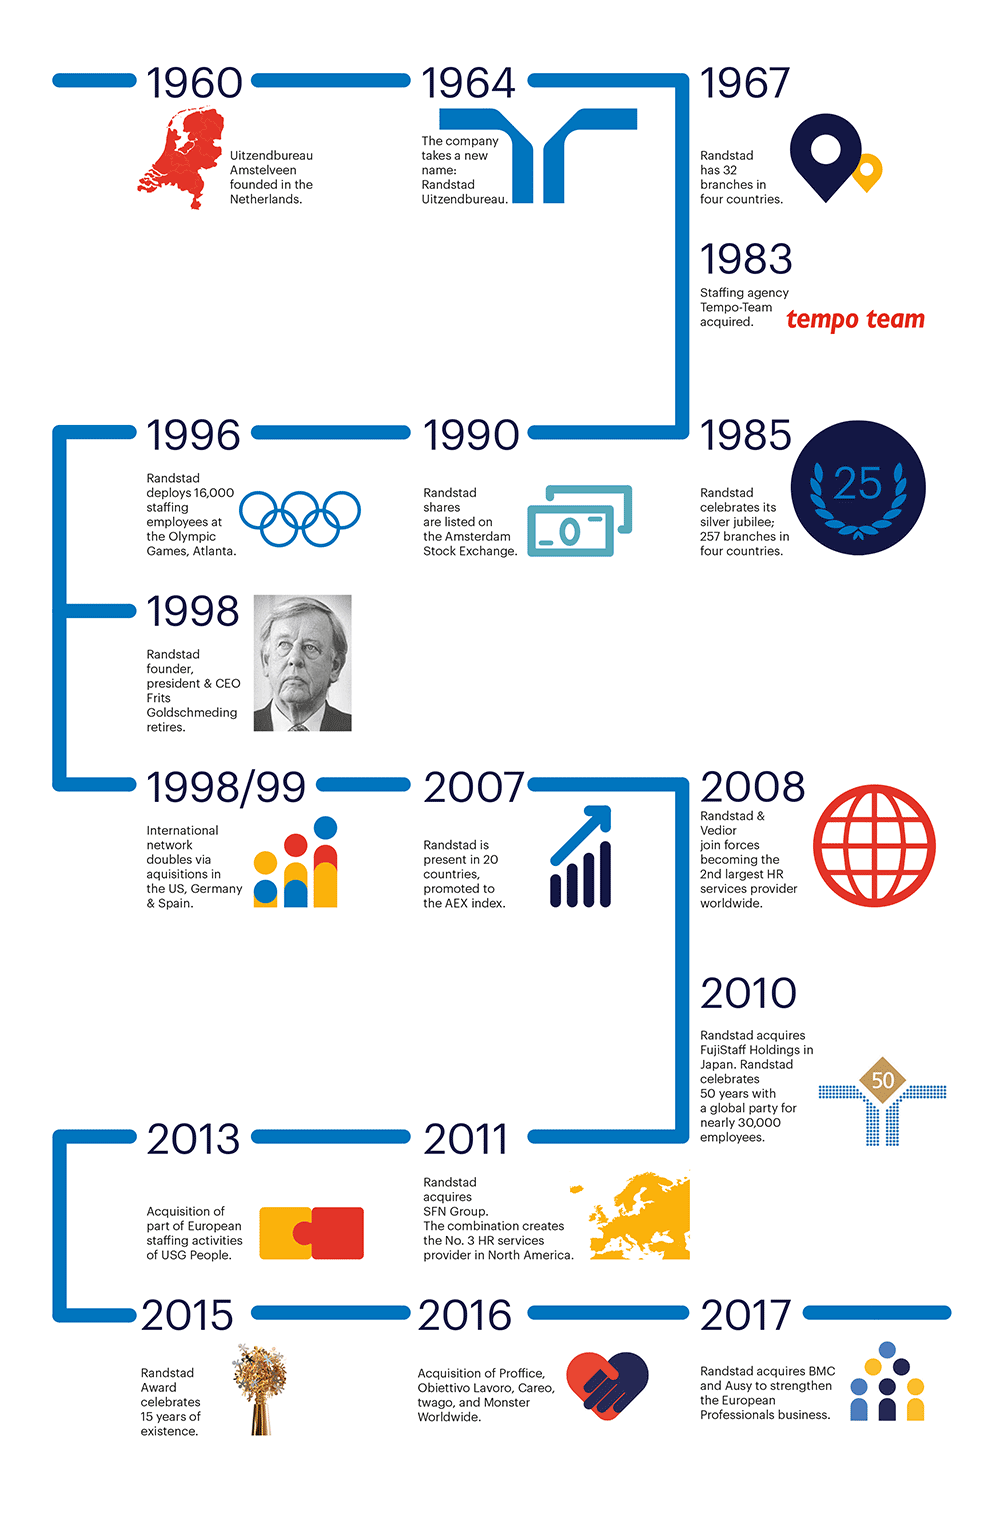 randstad-history-timeline-until-2017-EN